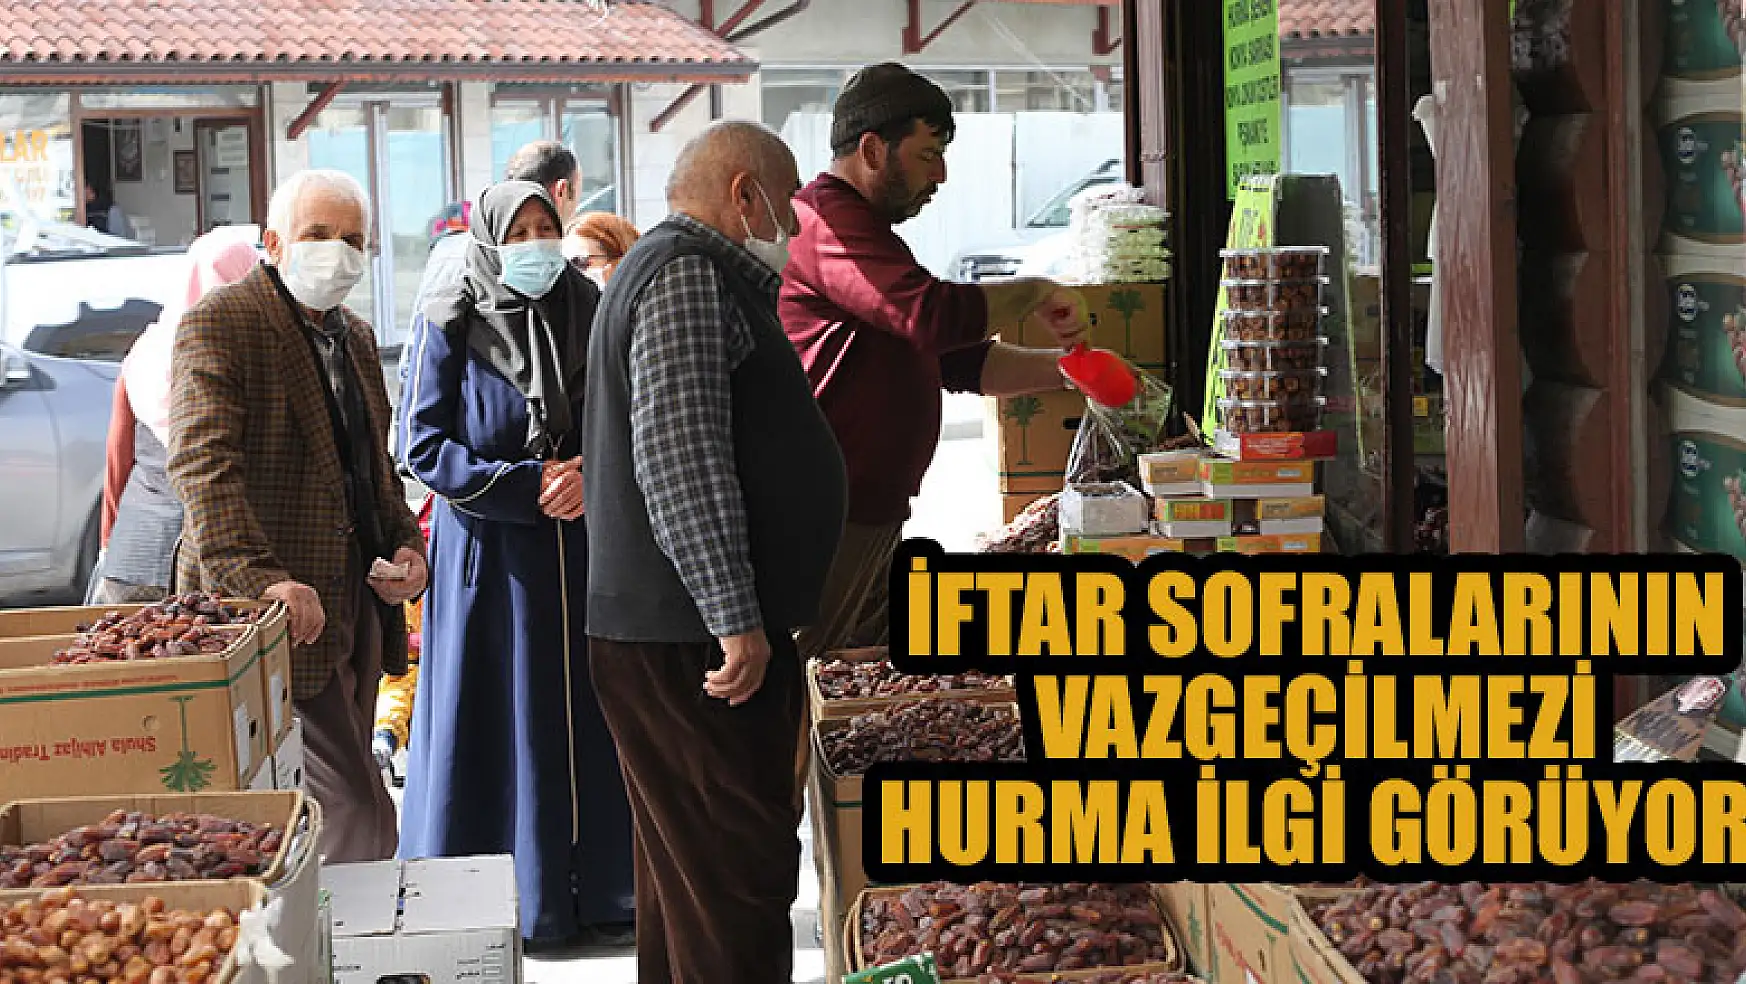 Konya'da iftar sofralarının vazgeçilmezi hurma ilgi görüyor